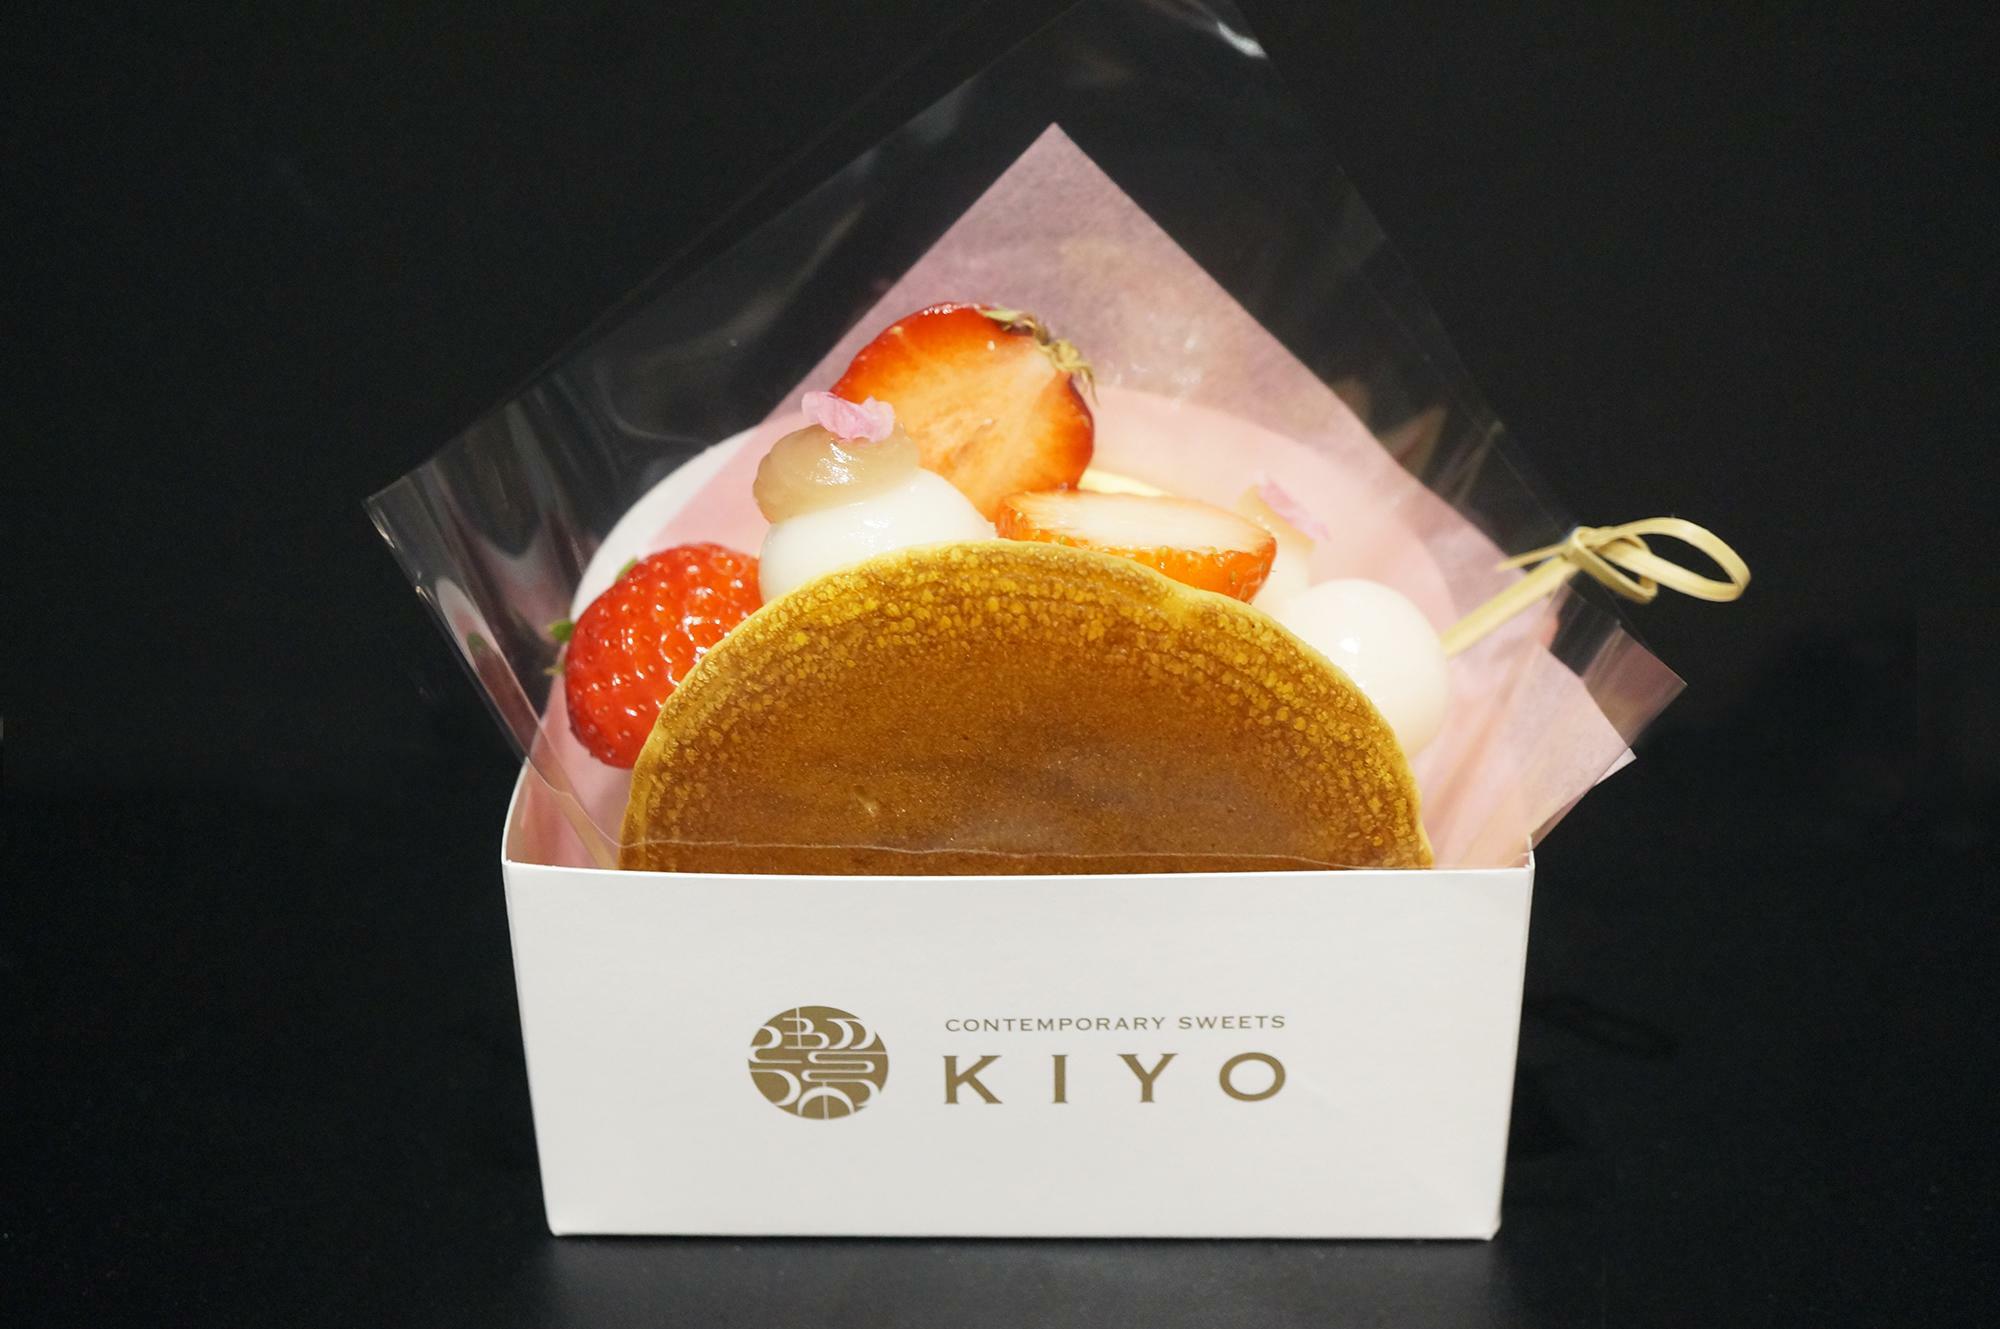 KIYO自家製のさくらカスタードクリームや白玉の一部は淡いピンク色でとても可愛らしい生どら焼きです。